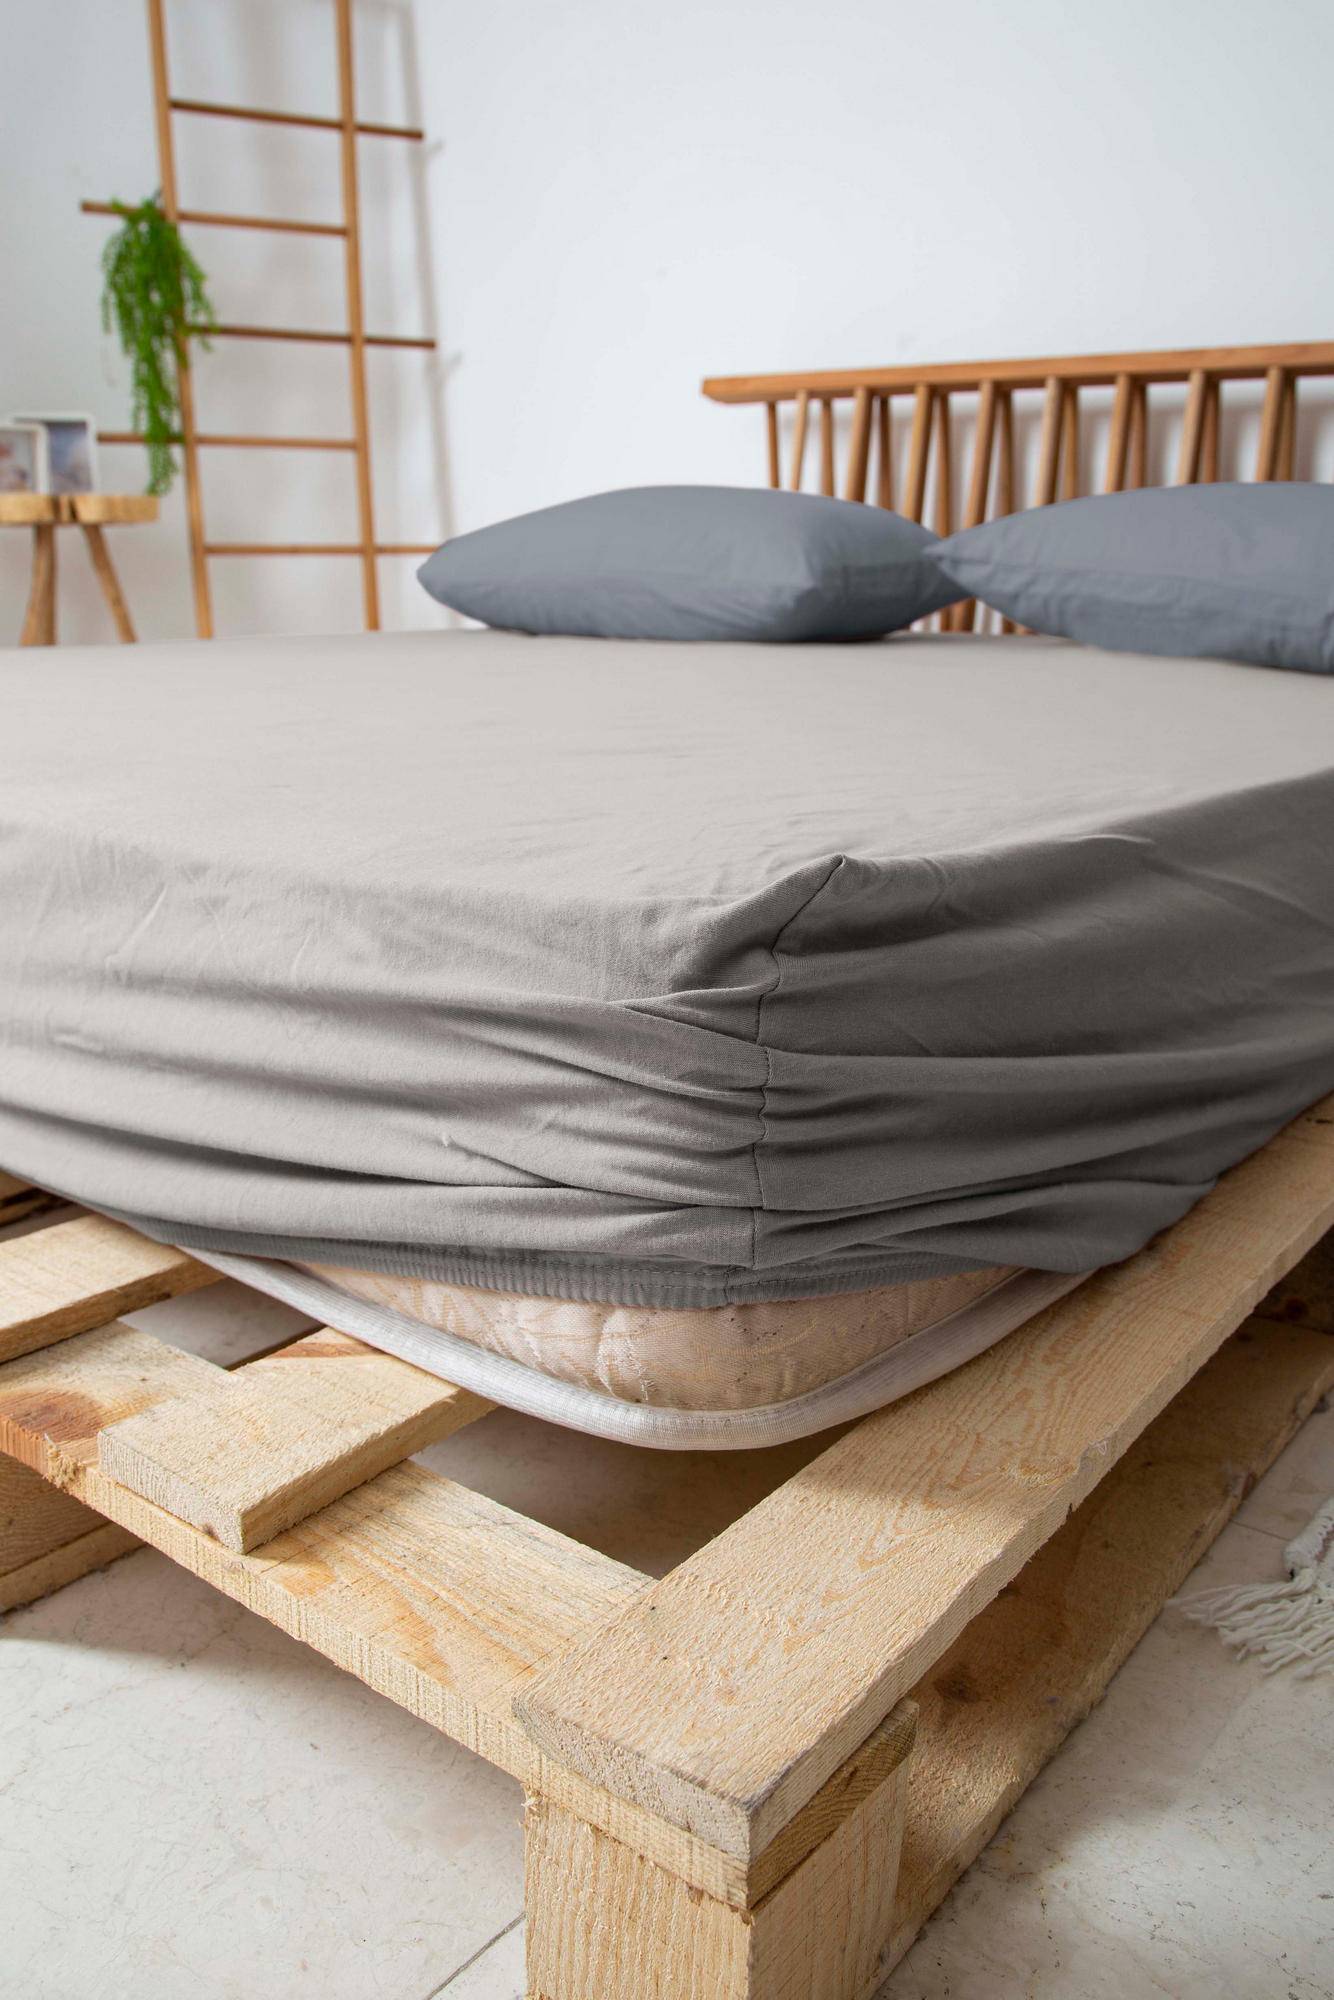 Comment choisir un drap pour un lit de 180x200 cm ?